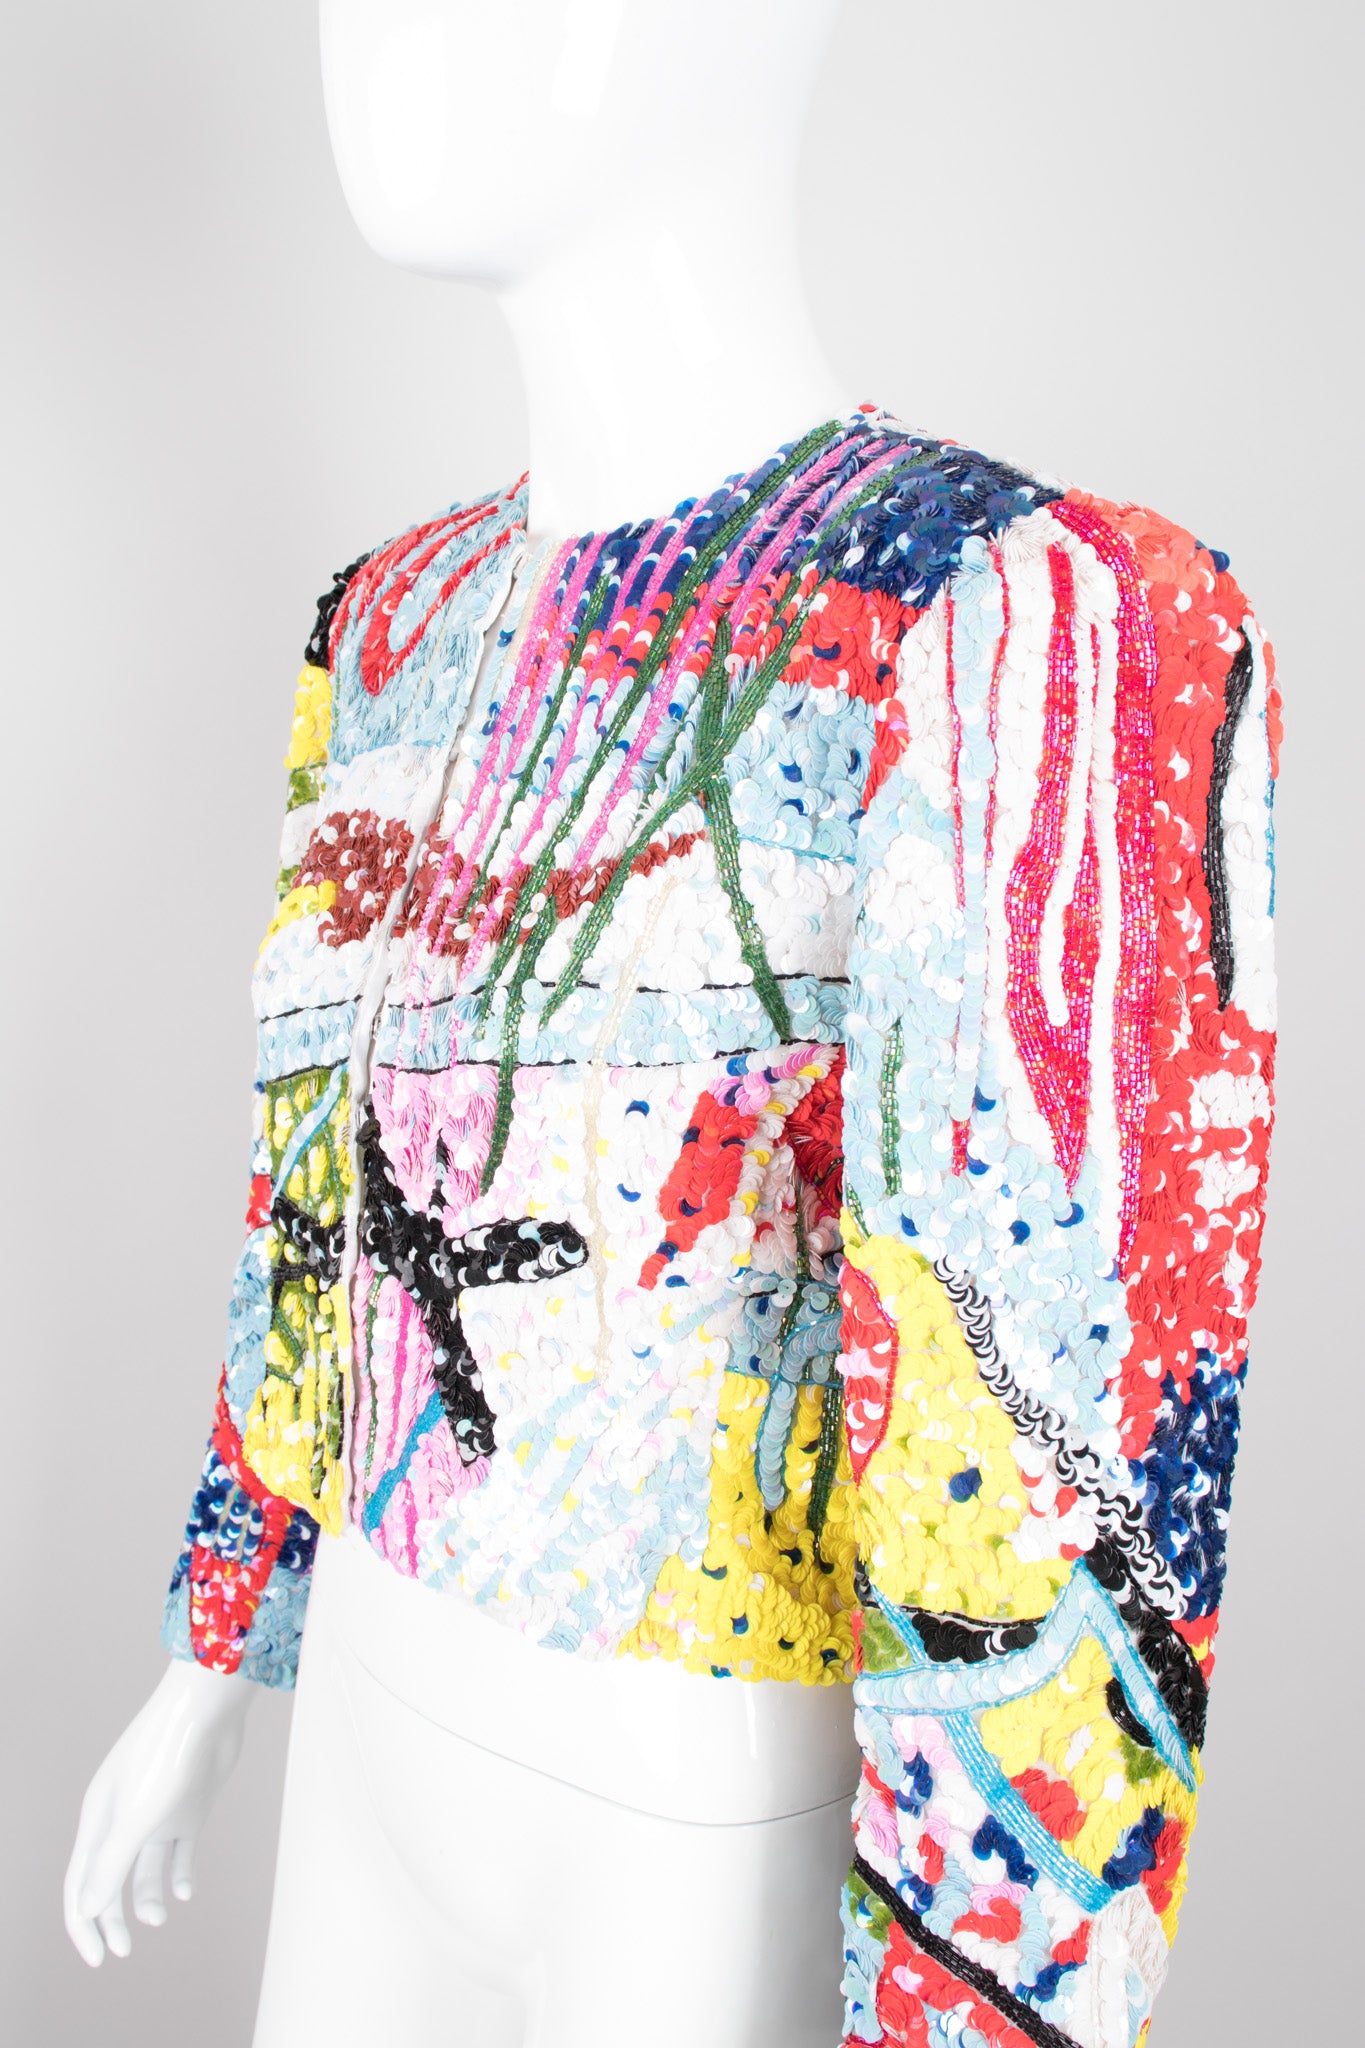 Jeanette for St. Martin Kastenberg Abstract Artist Painter Sequin Art Jacket